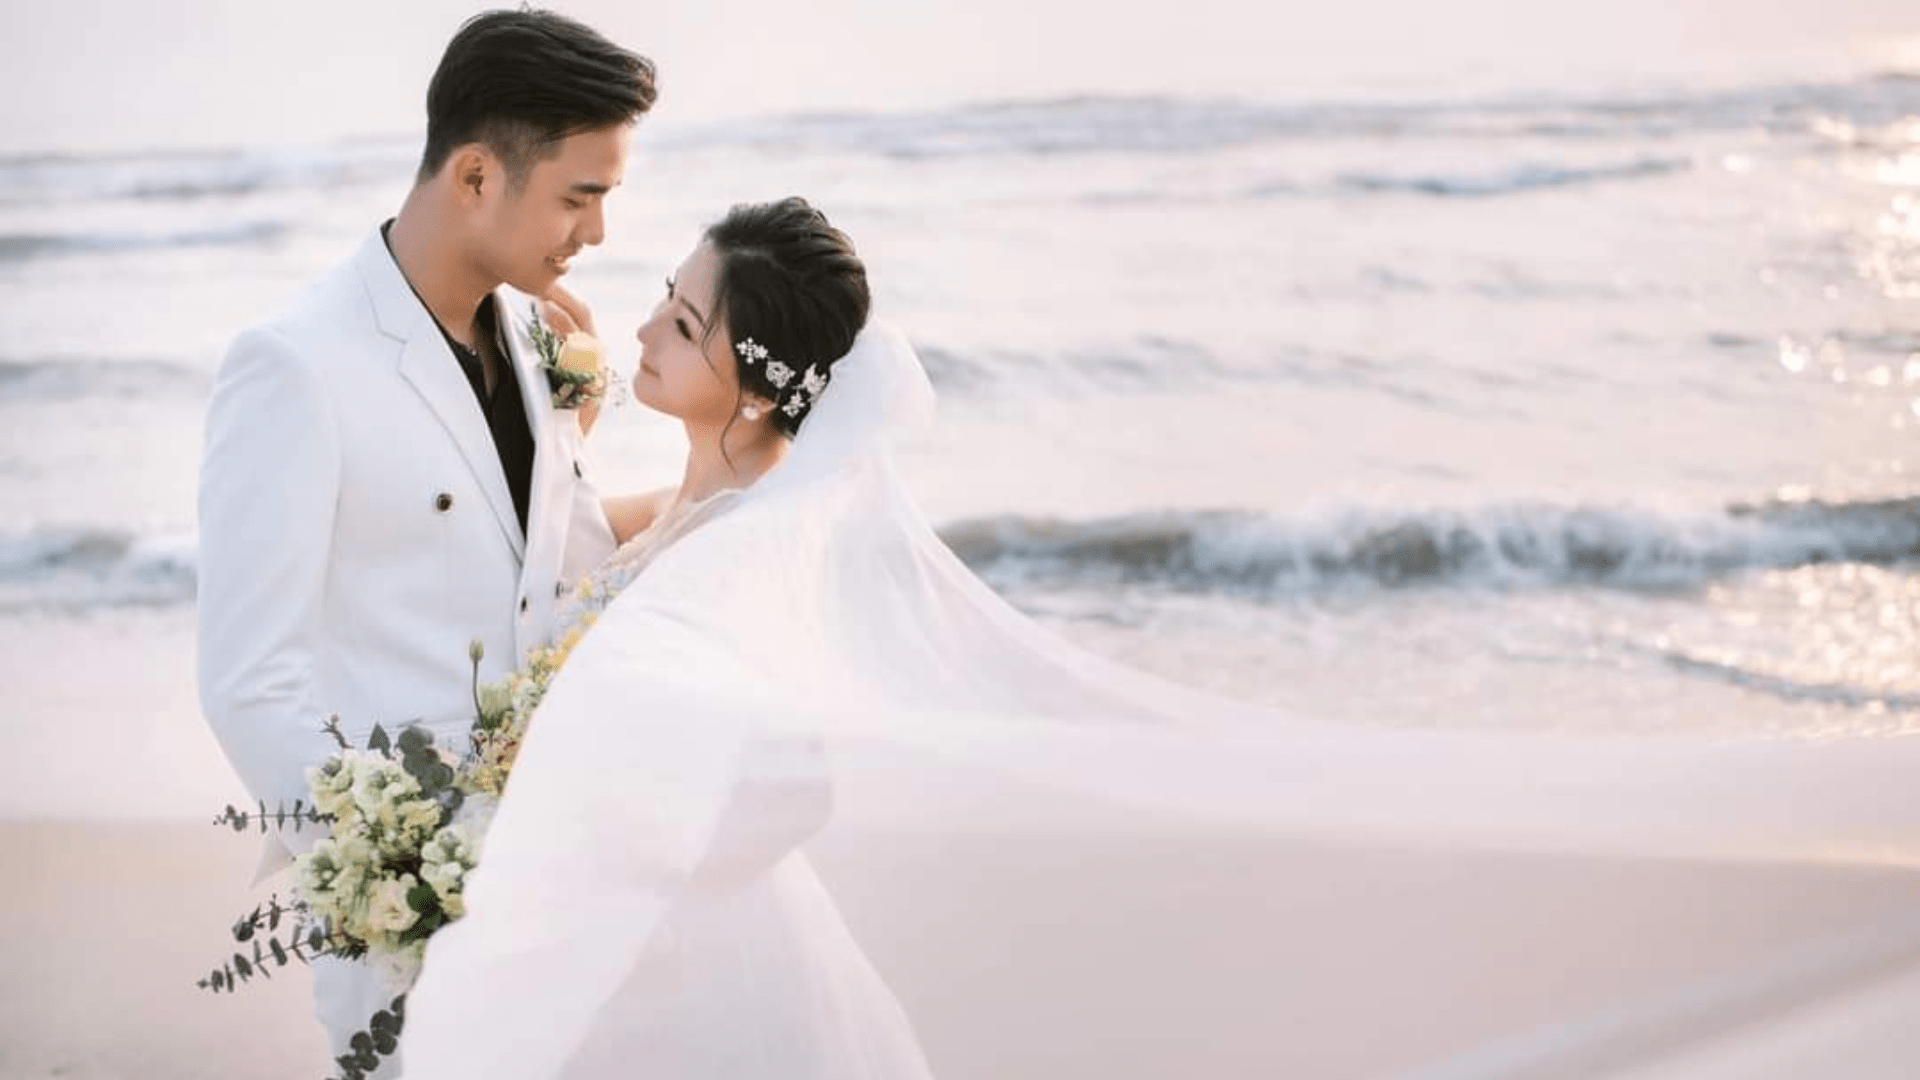 Thúy Jolie Wedding - Tiệm chụp ảnh cưới xinh tại Đà Nẵng